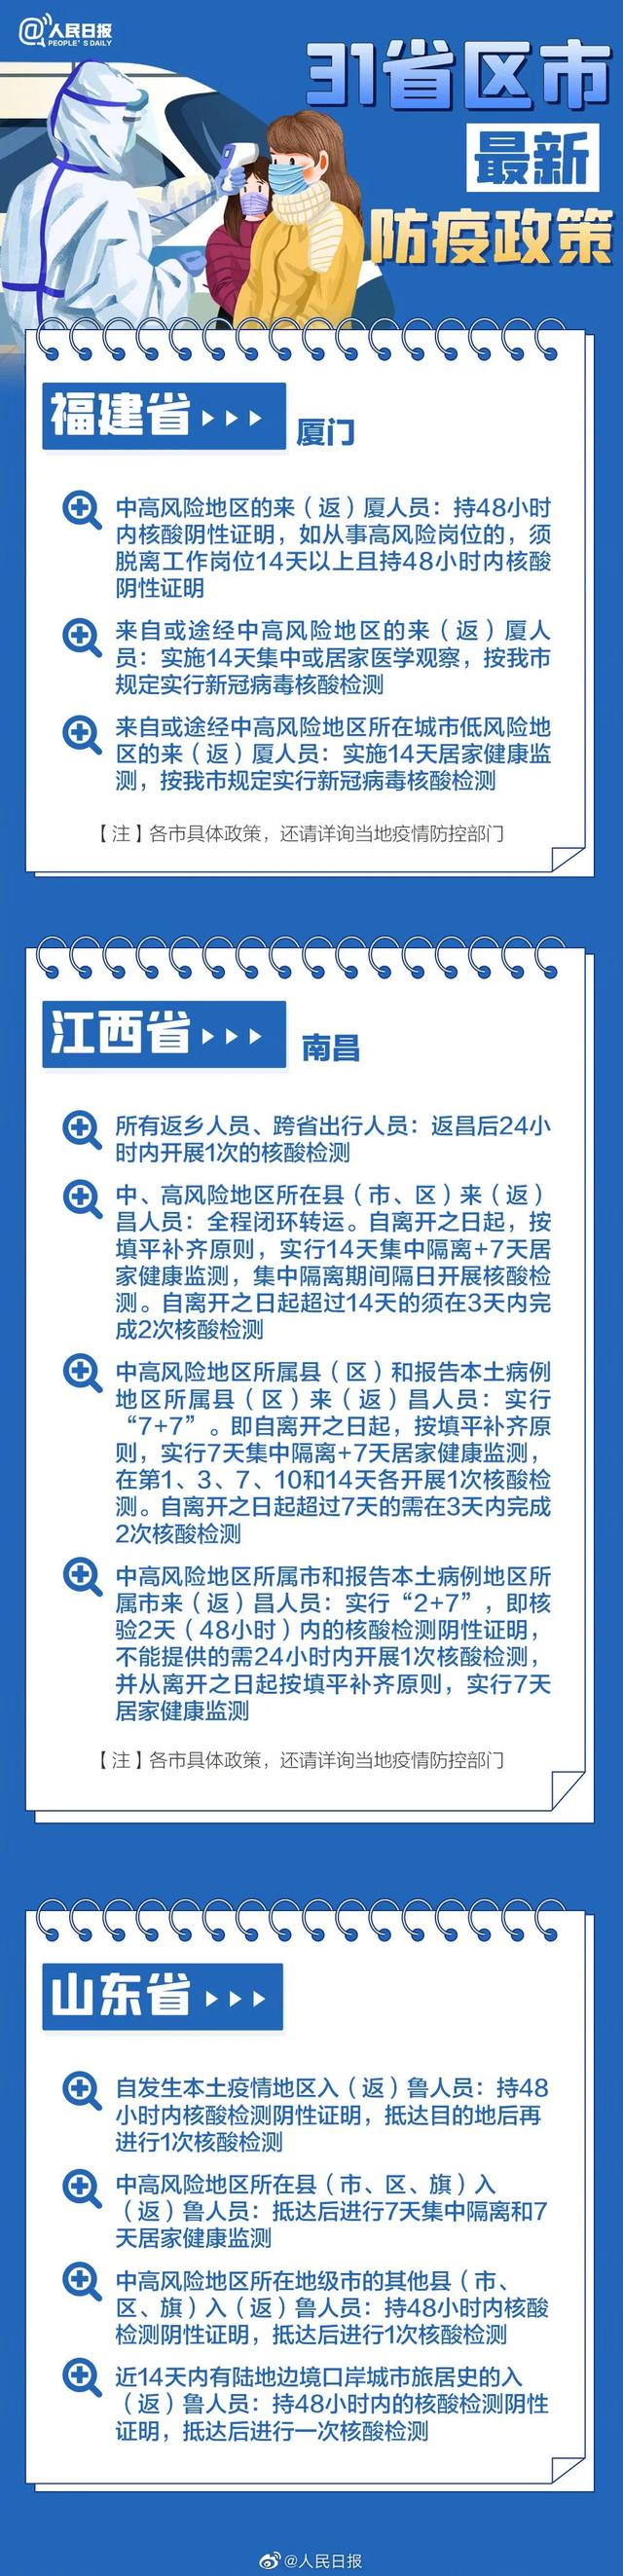 2022春节返乡31省市区防疫政策要求说明长图一览 5